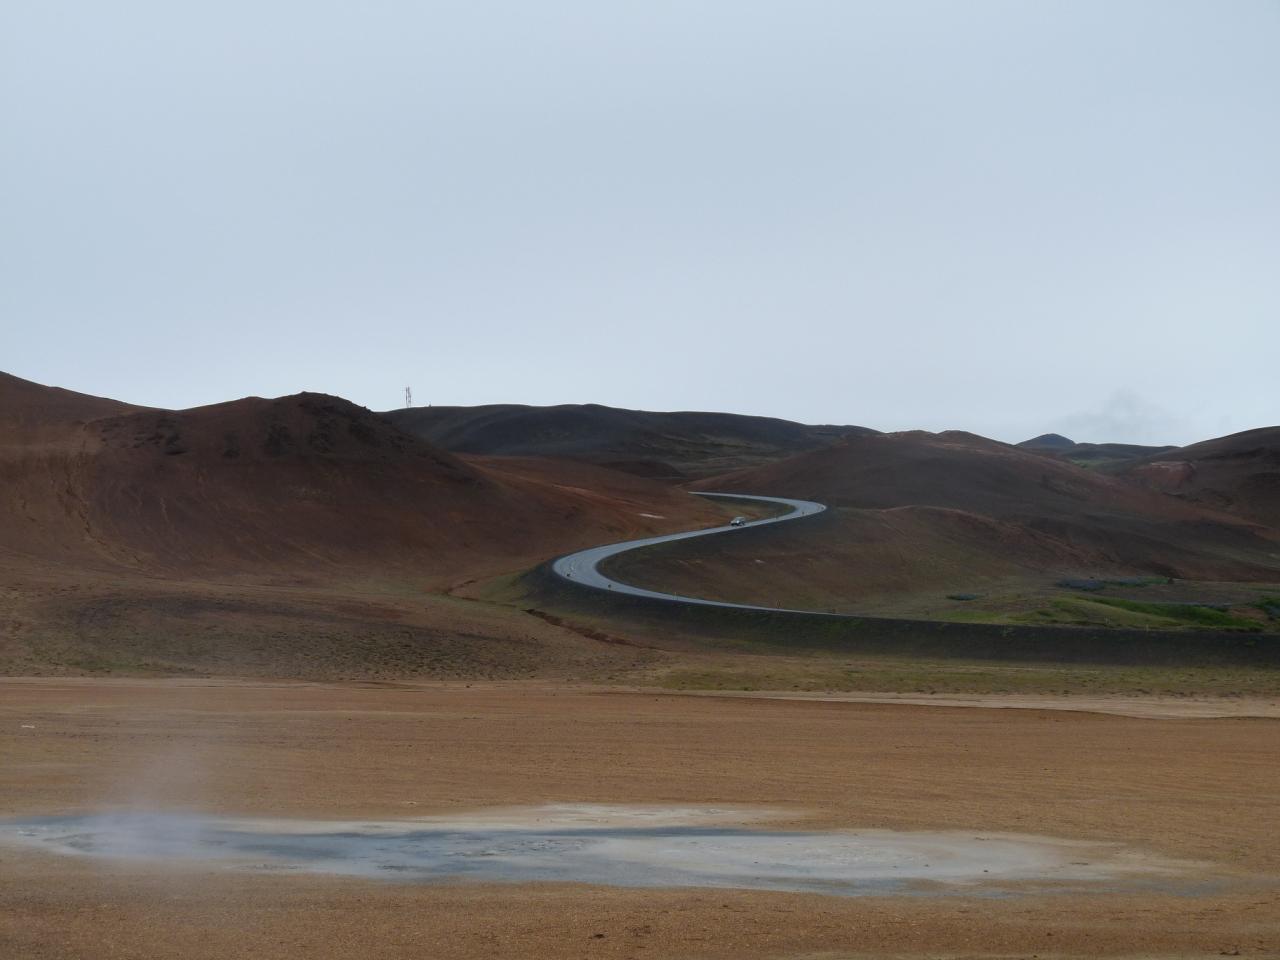 plaine des sable islandaise